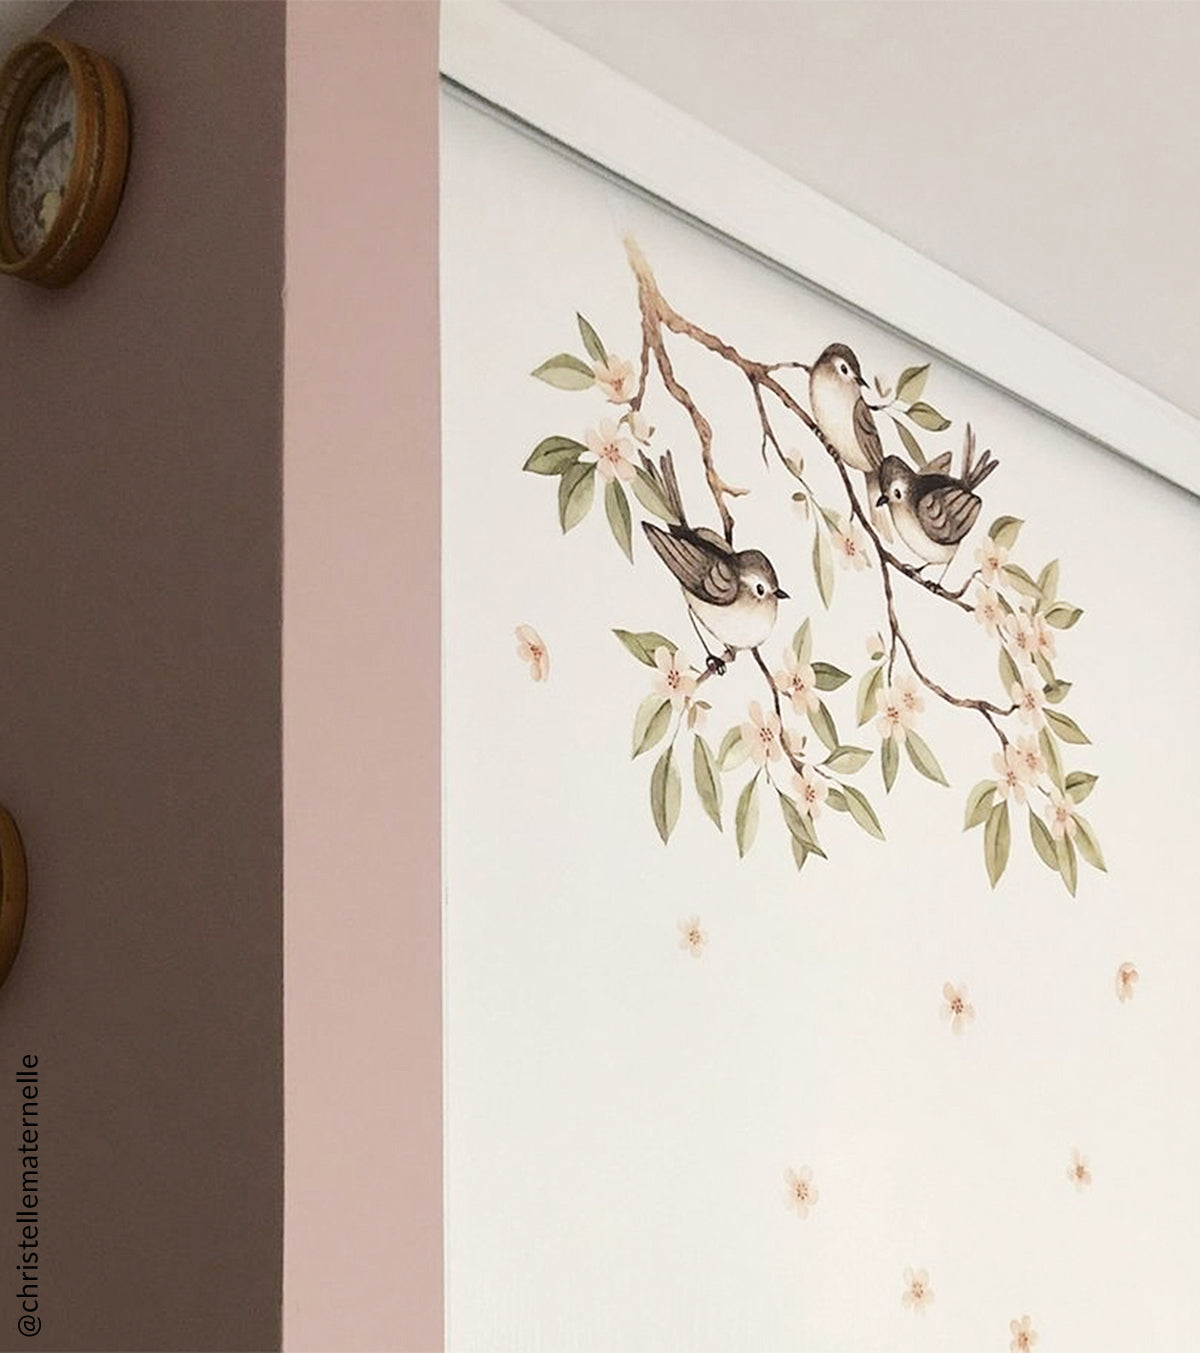 OH DEER - Vinilos Infantiles Murales de pared - Rama florecida y pájaros